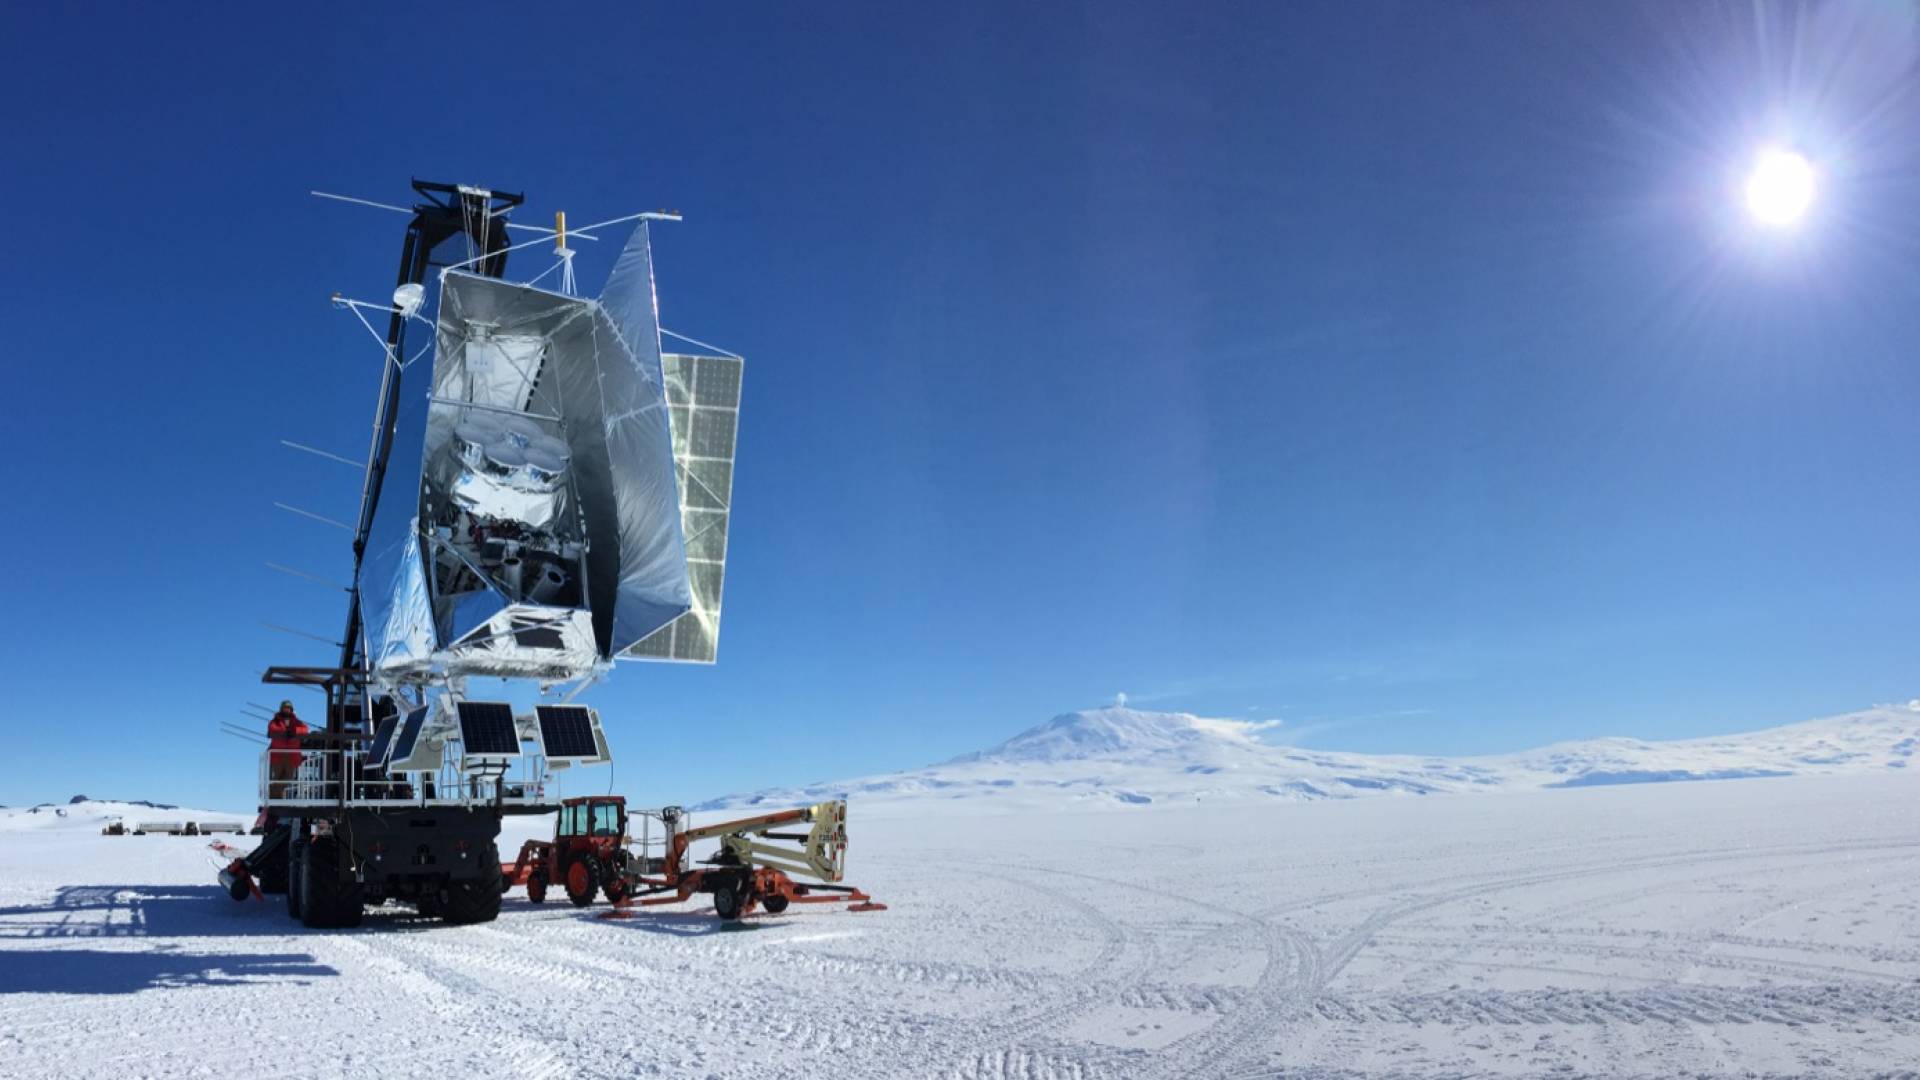 SPIDER launch in Antartica